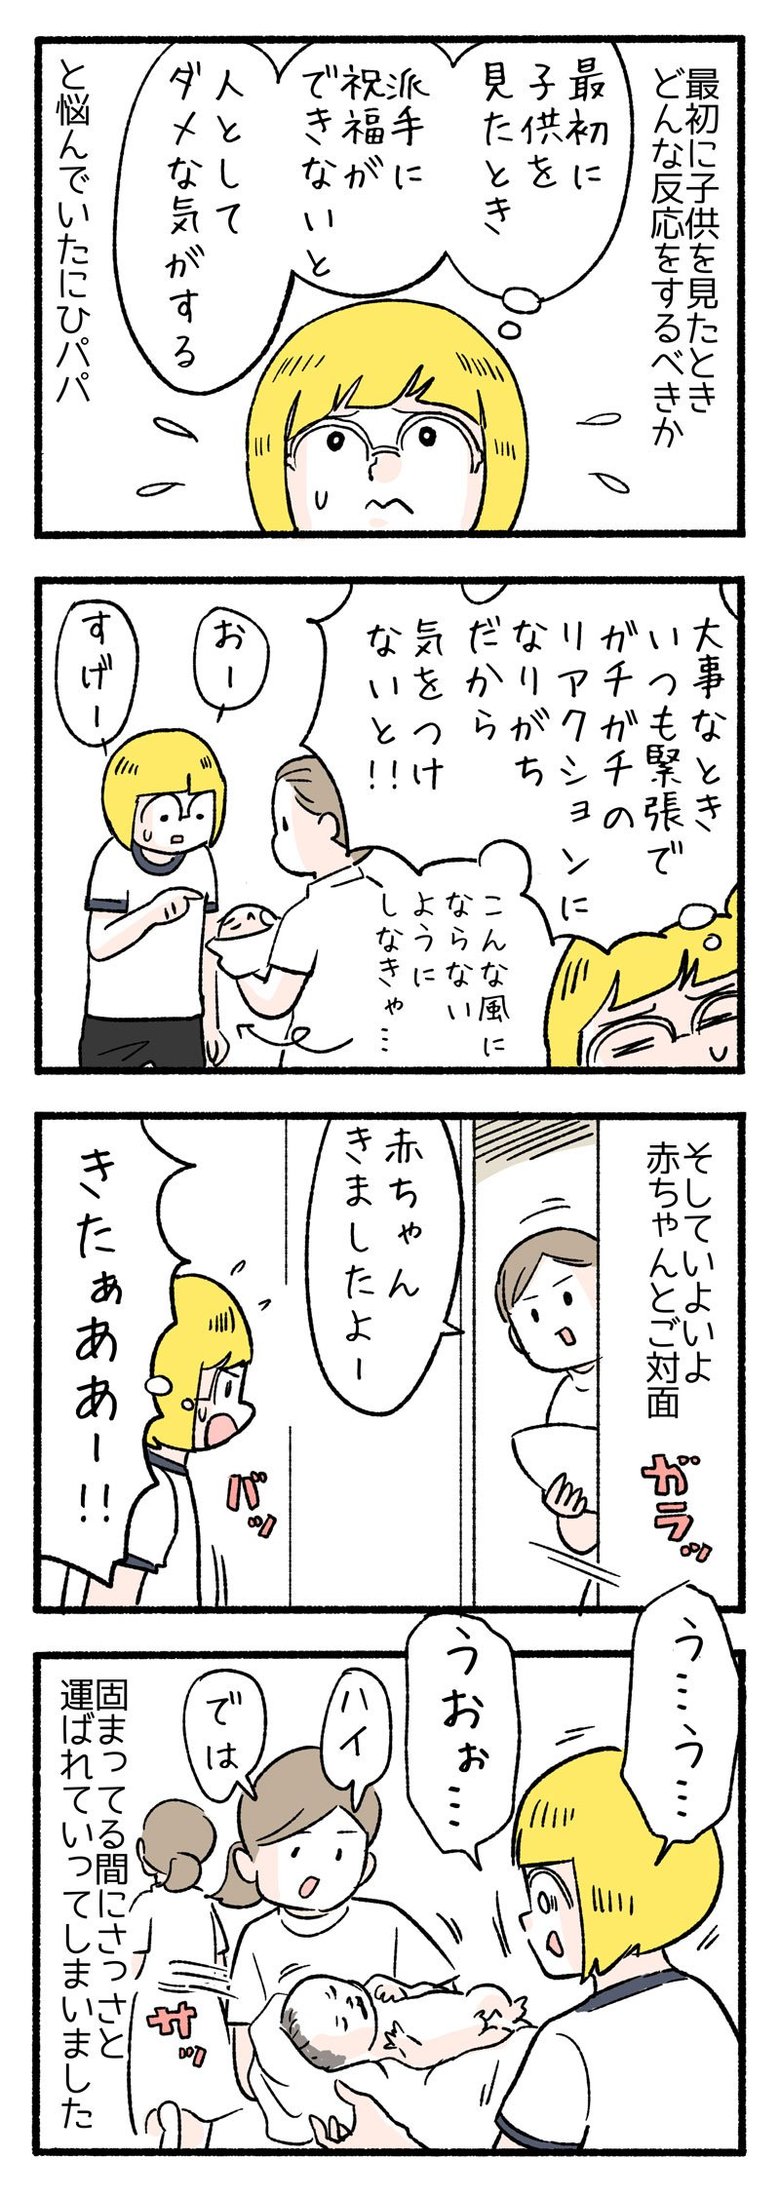 manga-nihipapa4-4